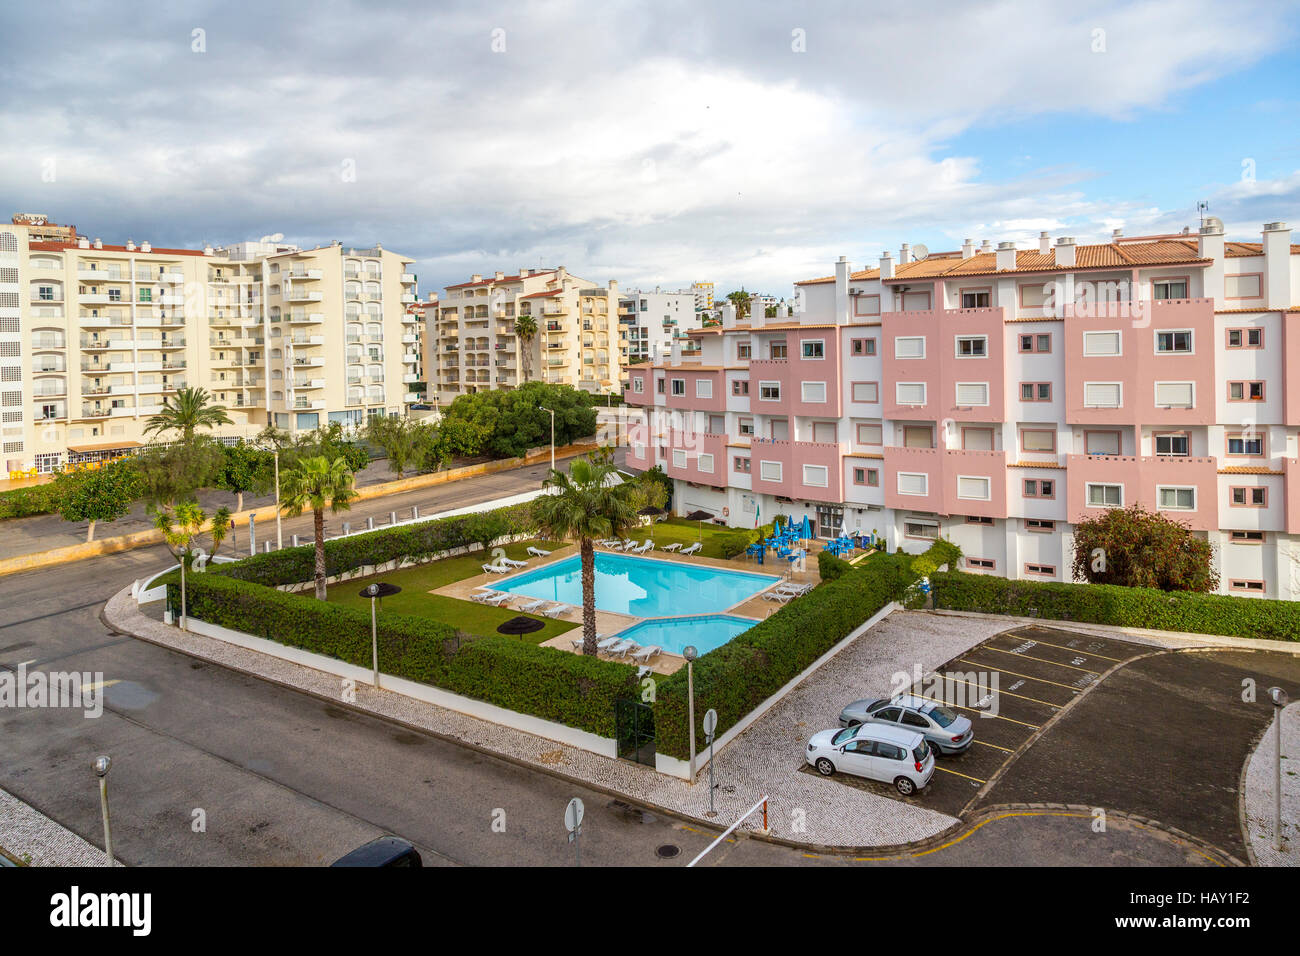 Alberghi con piscina e aree di parcheggio, Praia da Rocha, Algarve, PORTOGALLO Foto Stock